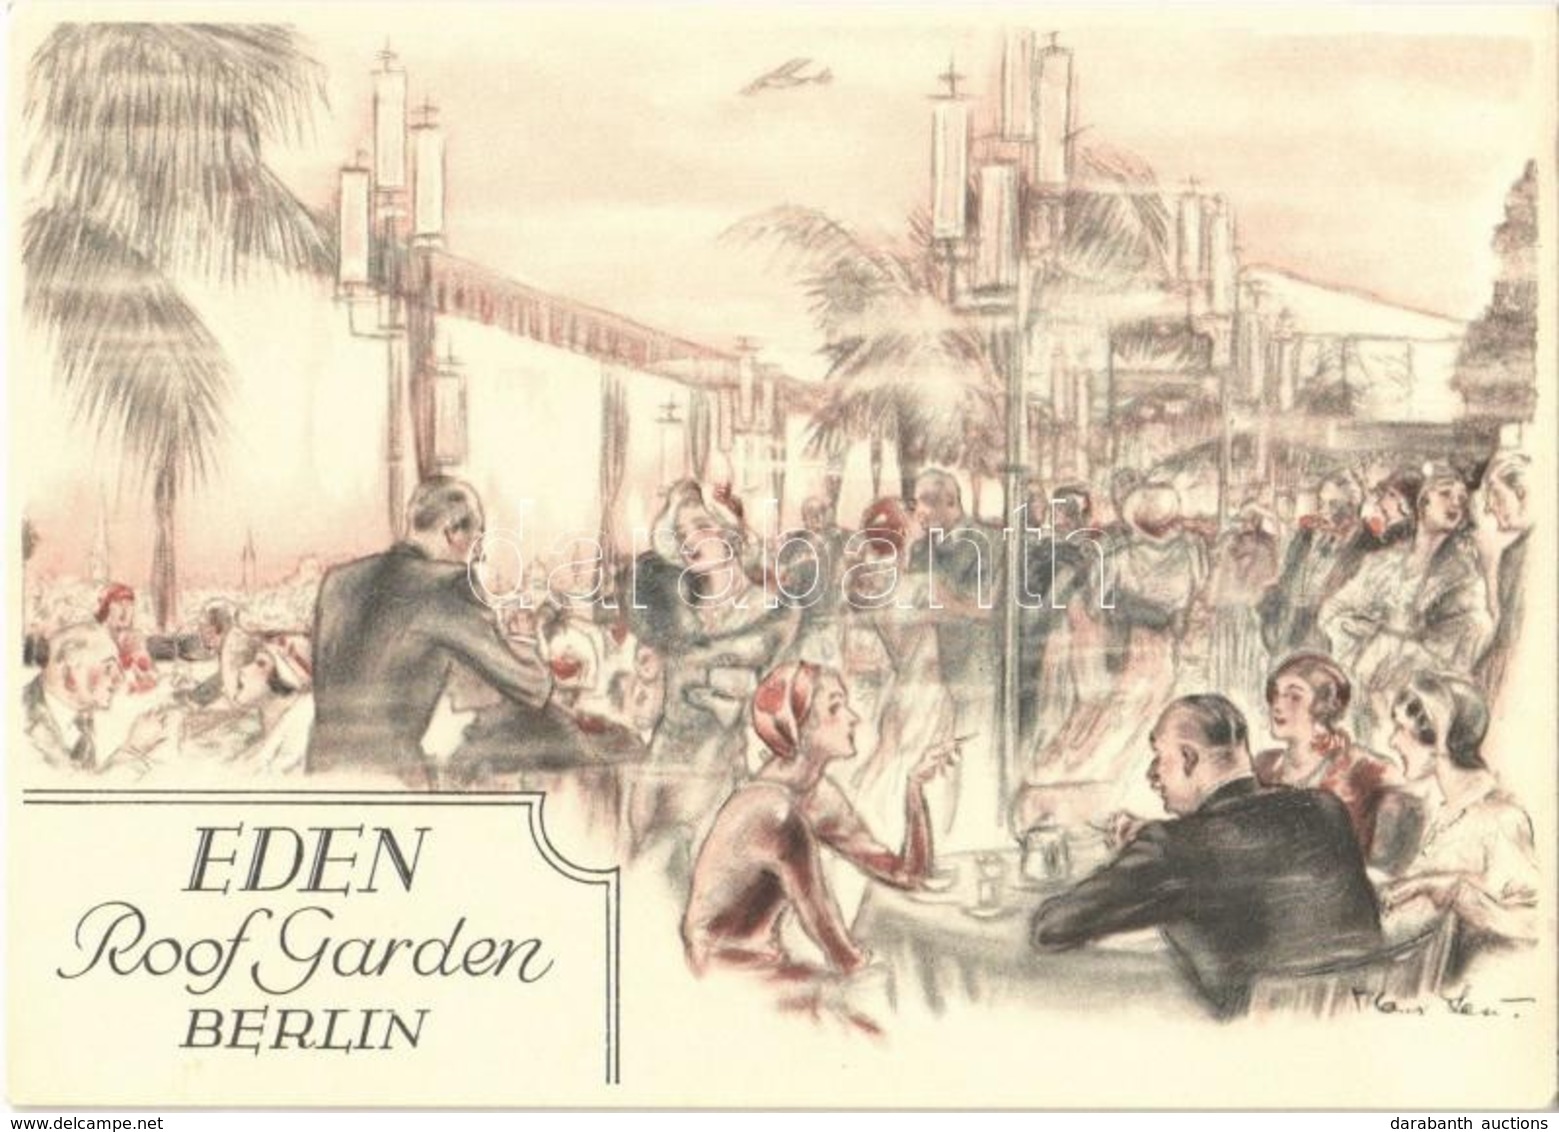 ** T1/T2 Berlin, Eden Hotel, Roof Garden, Advertisement Card (14,8 Cm X 10,5 Cm) - Ohne Zuordnung